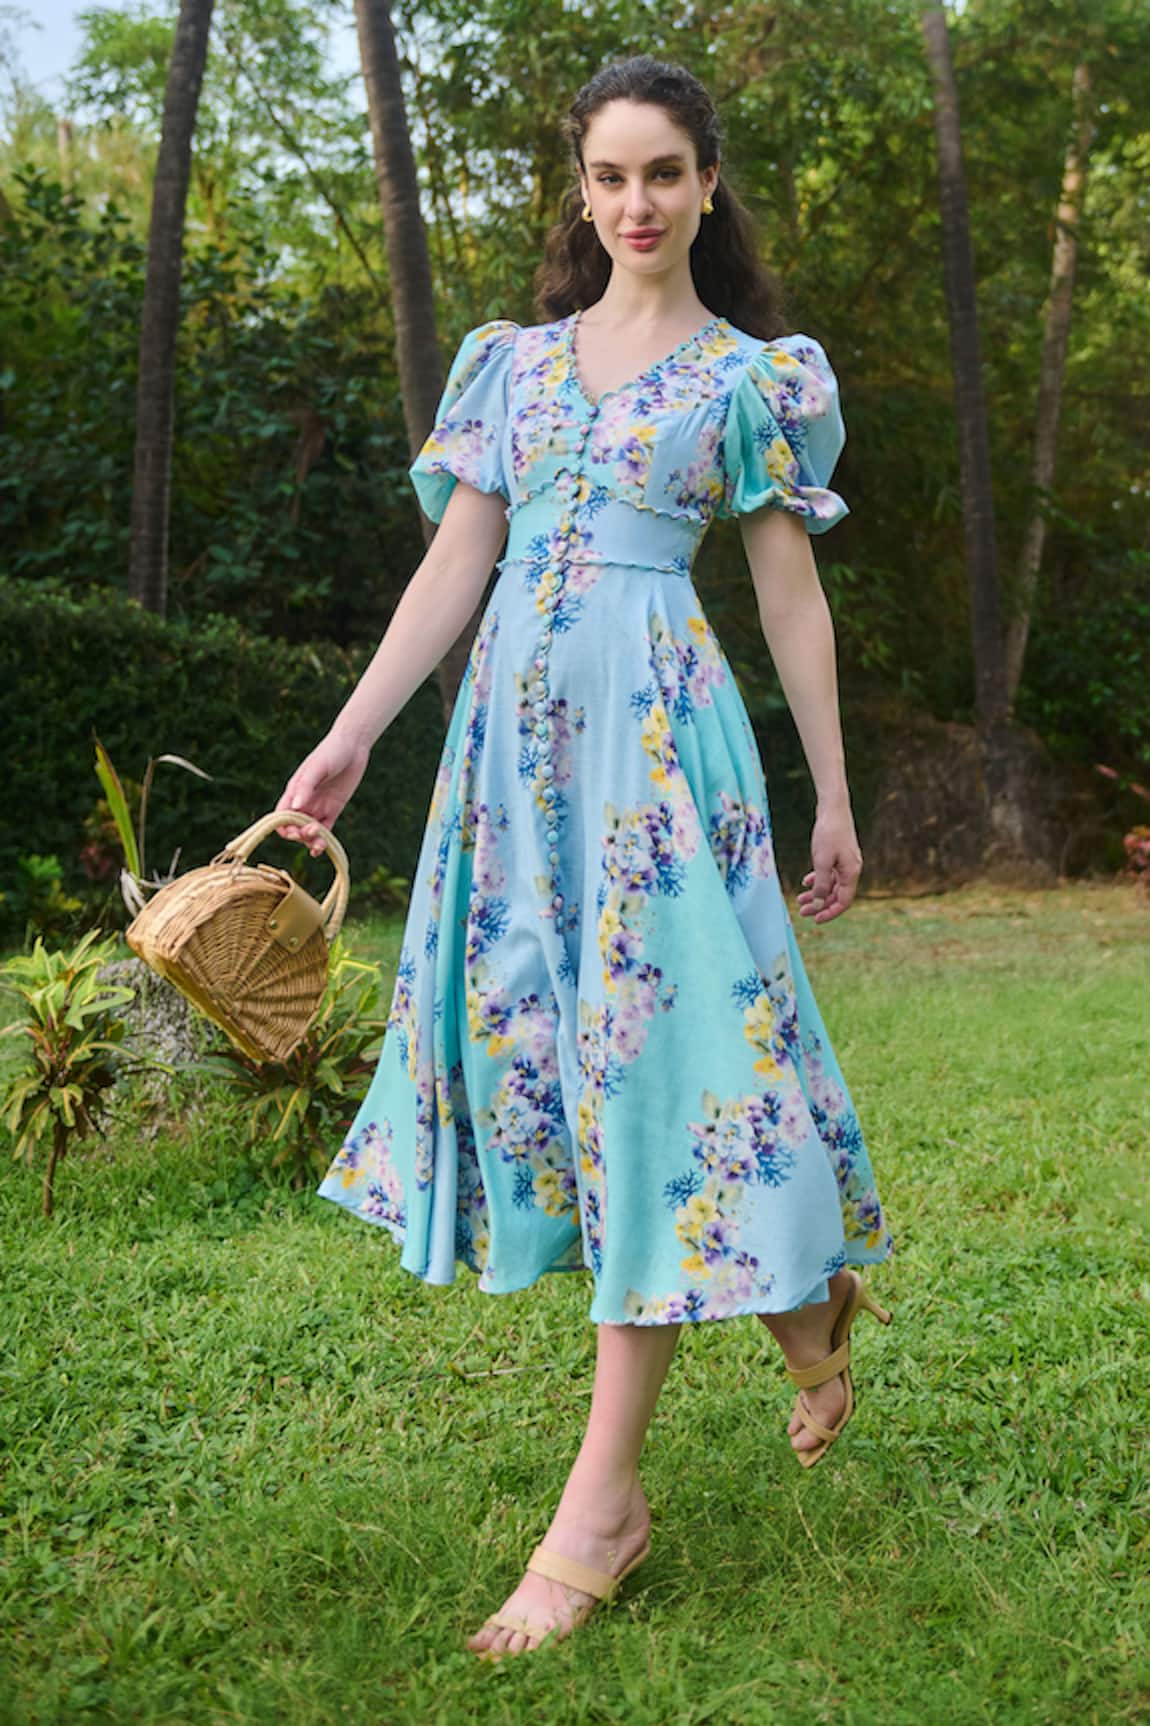 Verano by Tanya Marina Floral Print Flared Dress